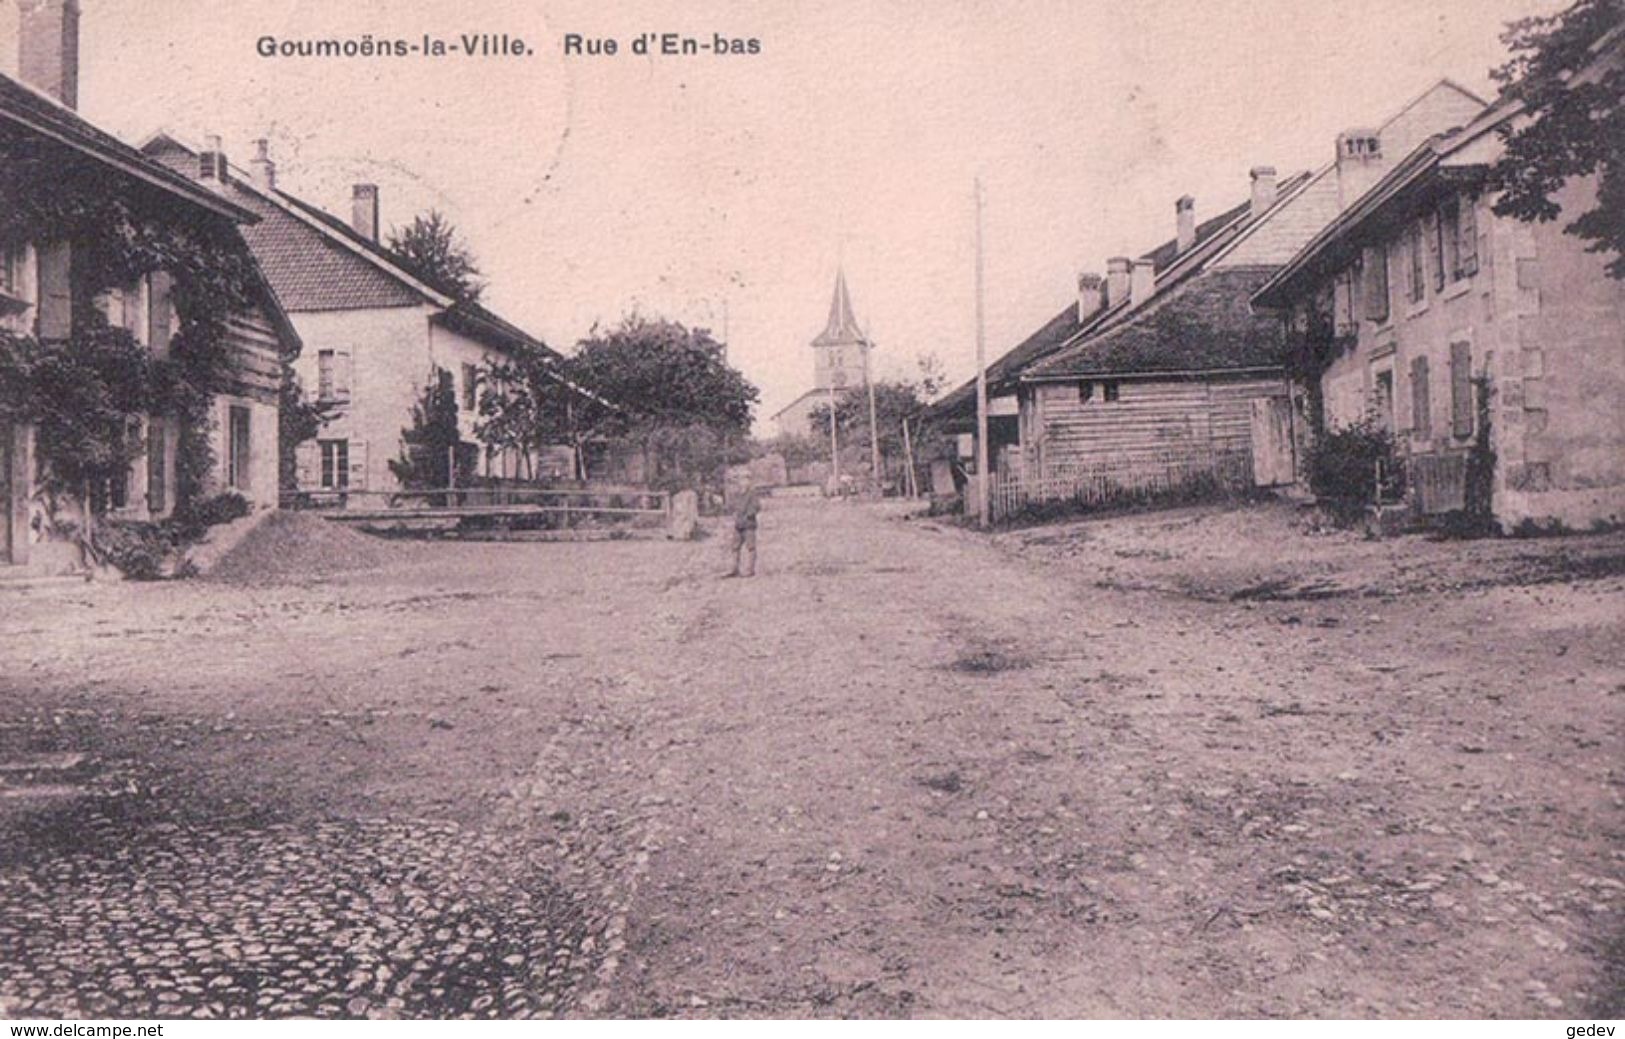 Goumoëns-la-Ville, Rue D'En-Bas (5284) Pli D'angle - Goumoëns